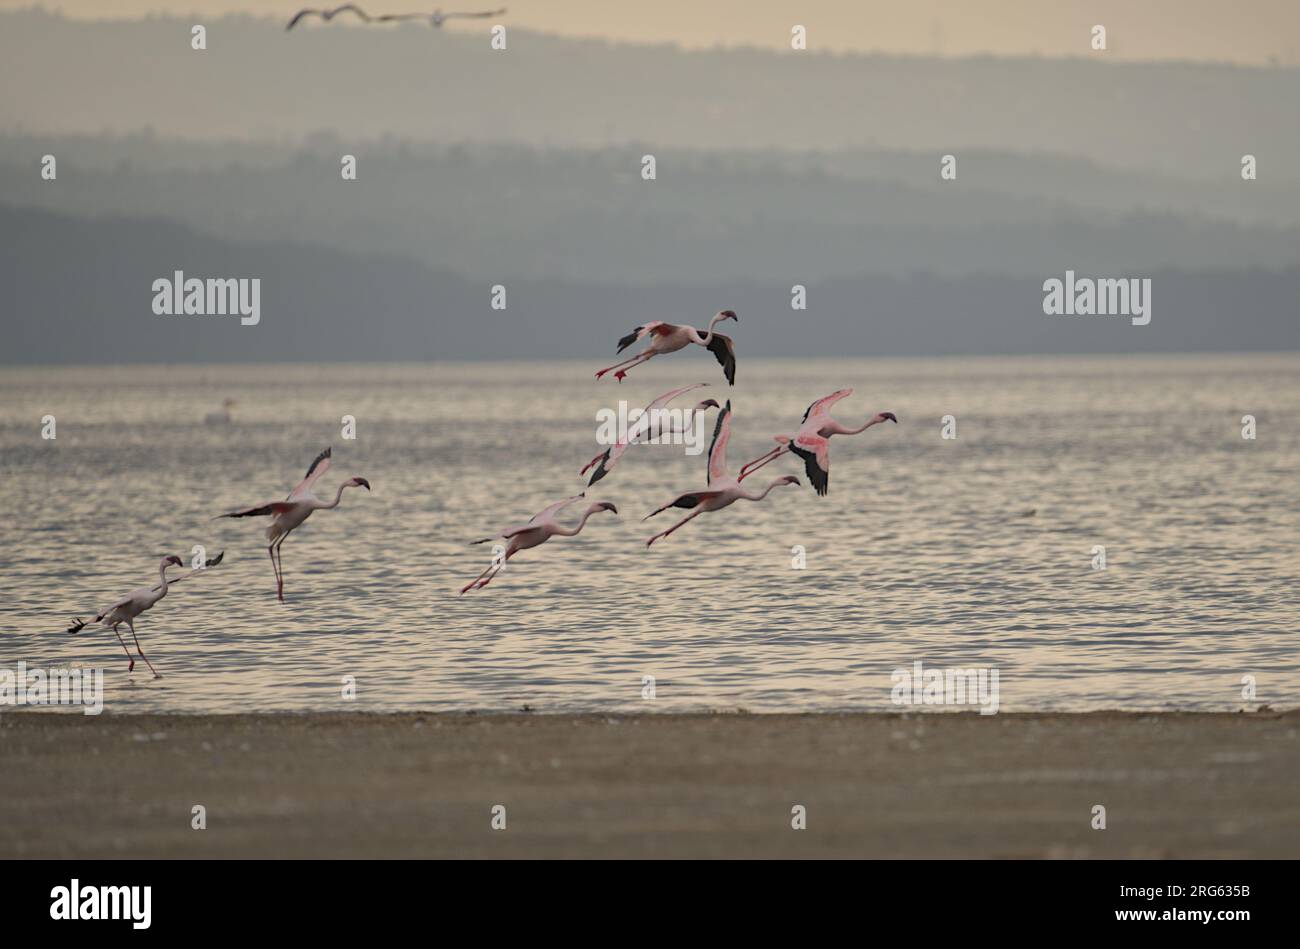 Fliegende Gruppe von Flamingos, die am Strand von Lake Nakuru ankommen und sich auf die Landung vorbereiten, Kenia, Afrika Stockfoto